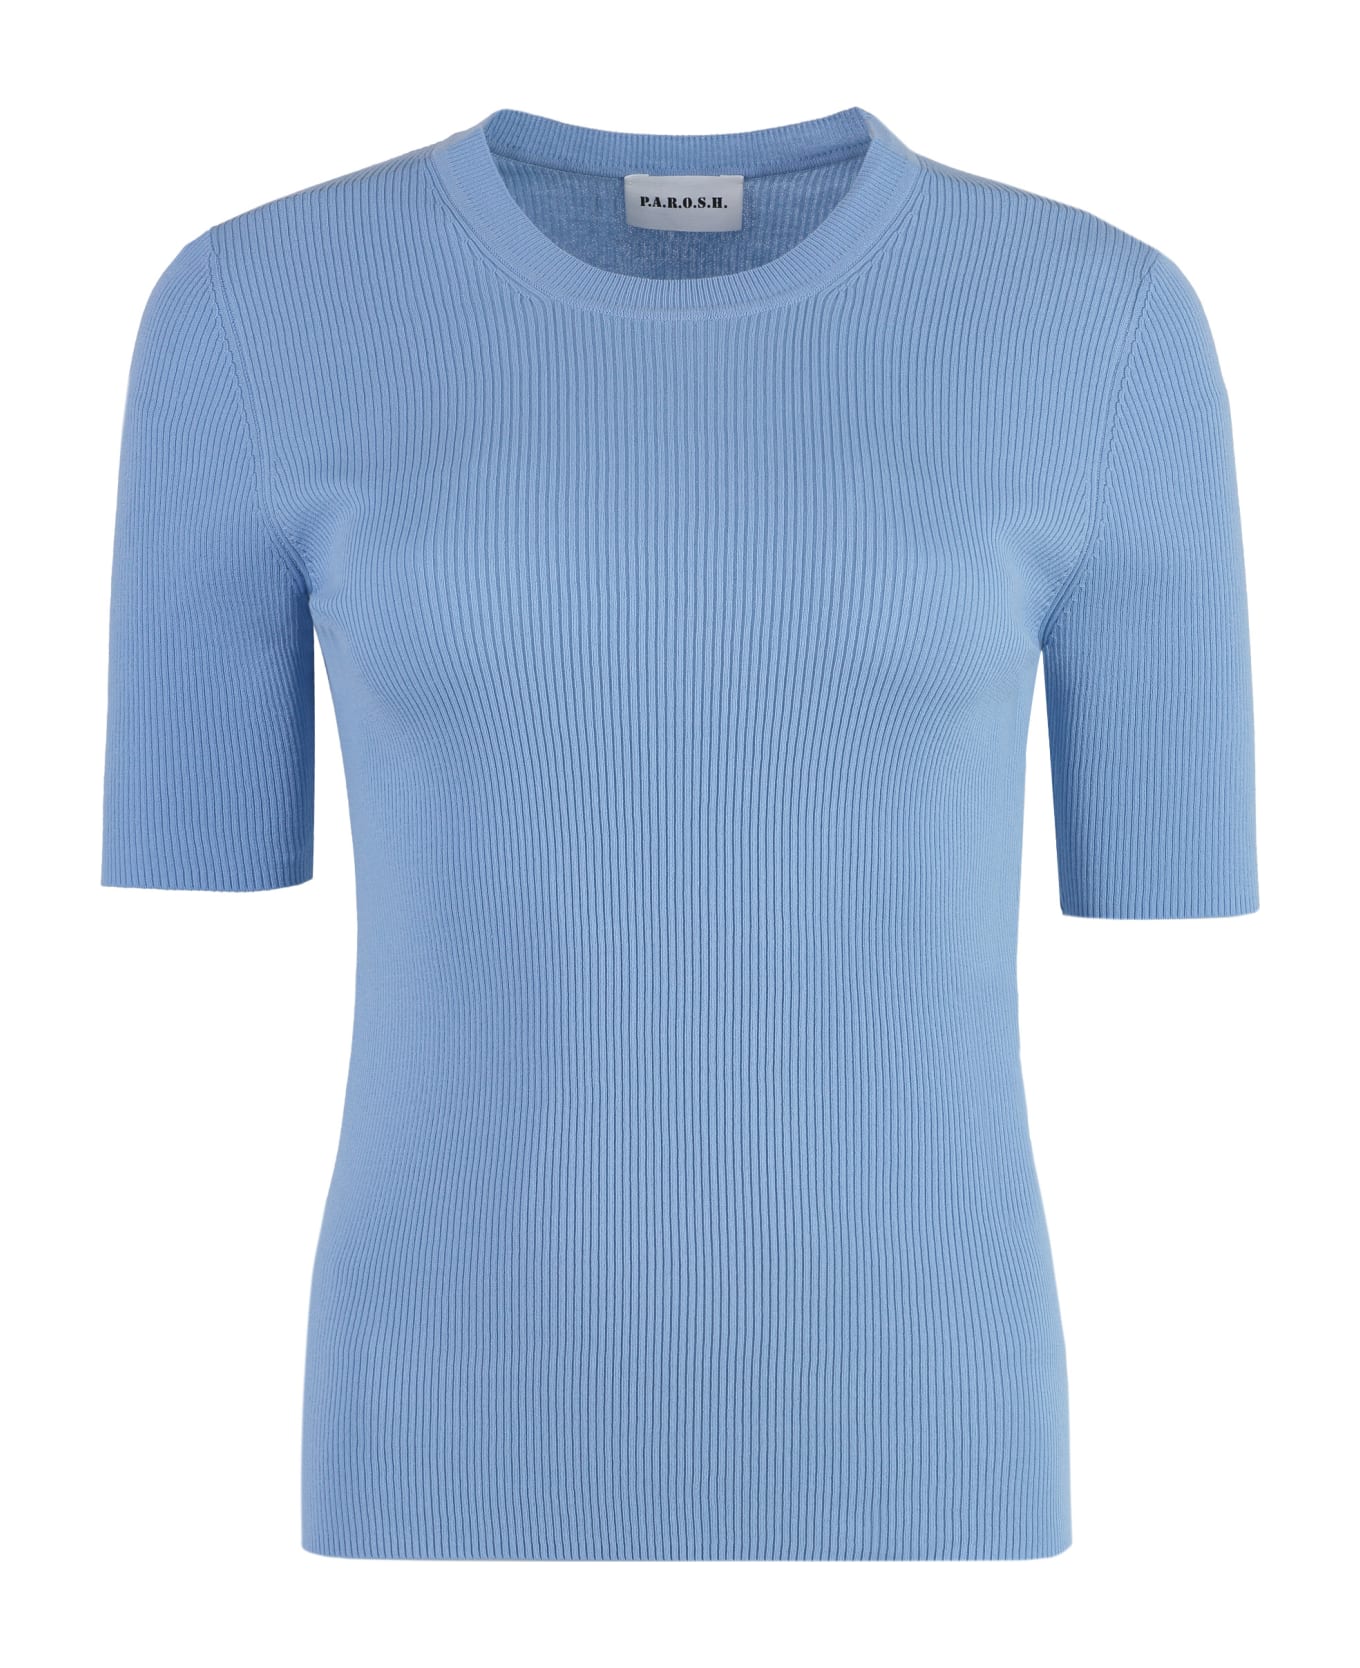 Parosh Cotton Knit T-shirt - Azzurro Polvere Tシャツ